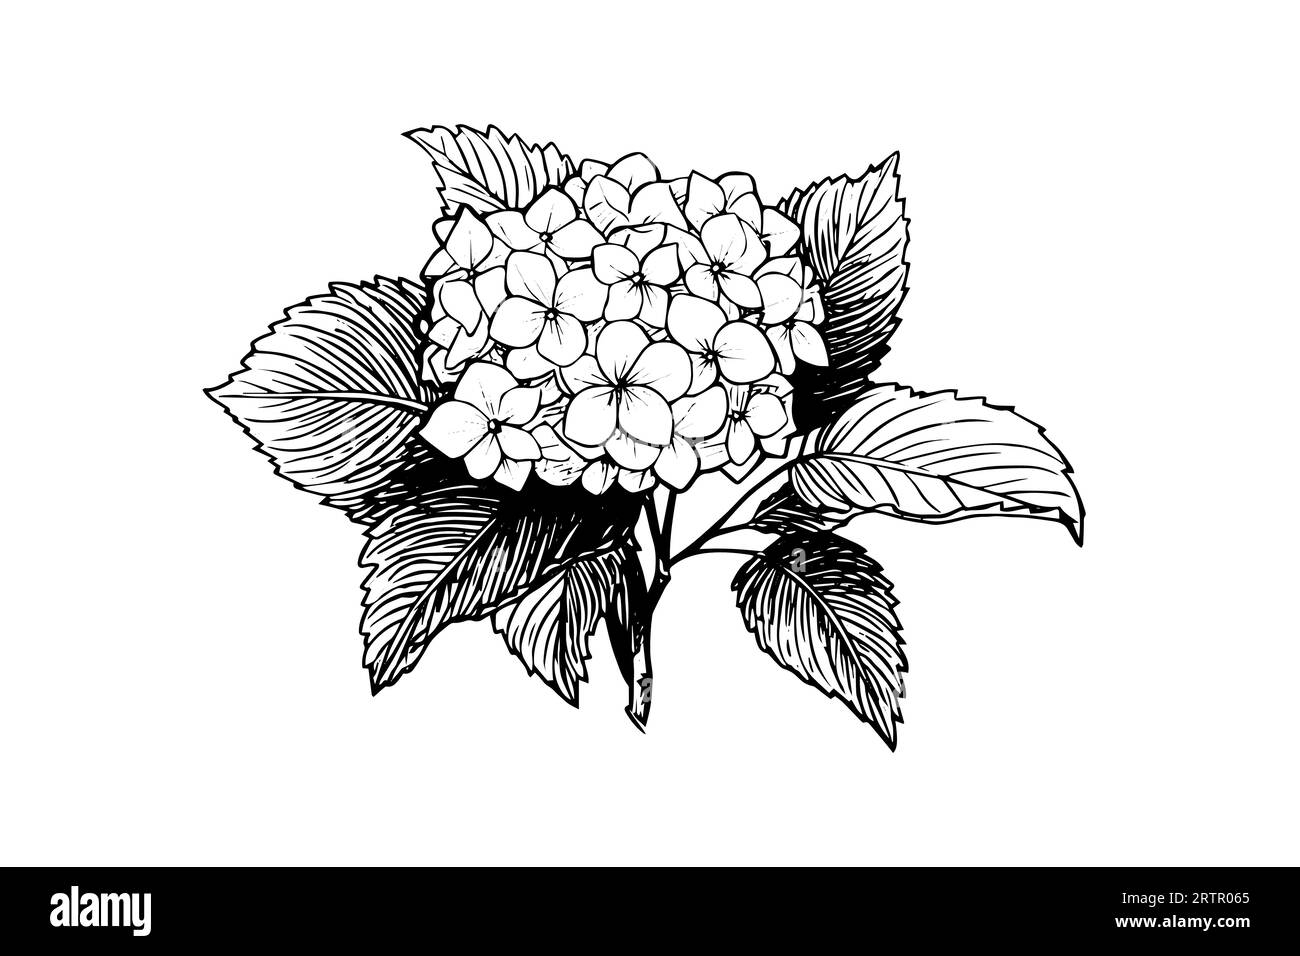 Handgezeichnete Tuschezeichnung Hortensienblüten. Vektorillustration im Gravurstil. Stock Vektor